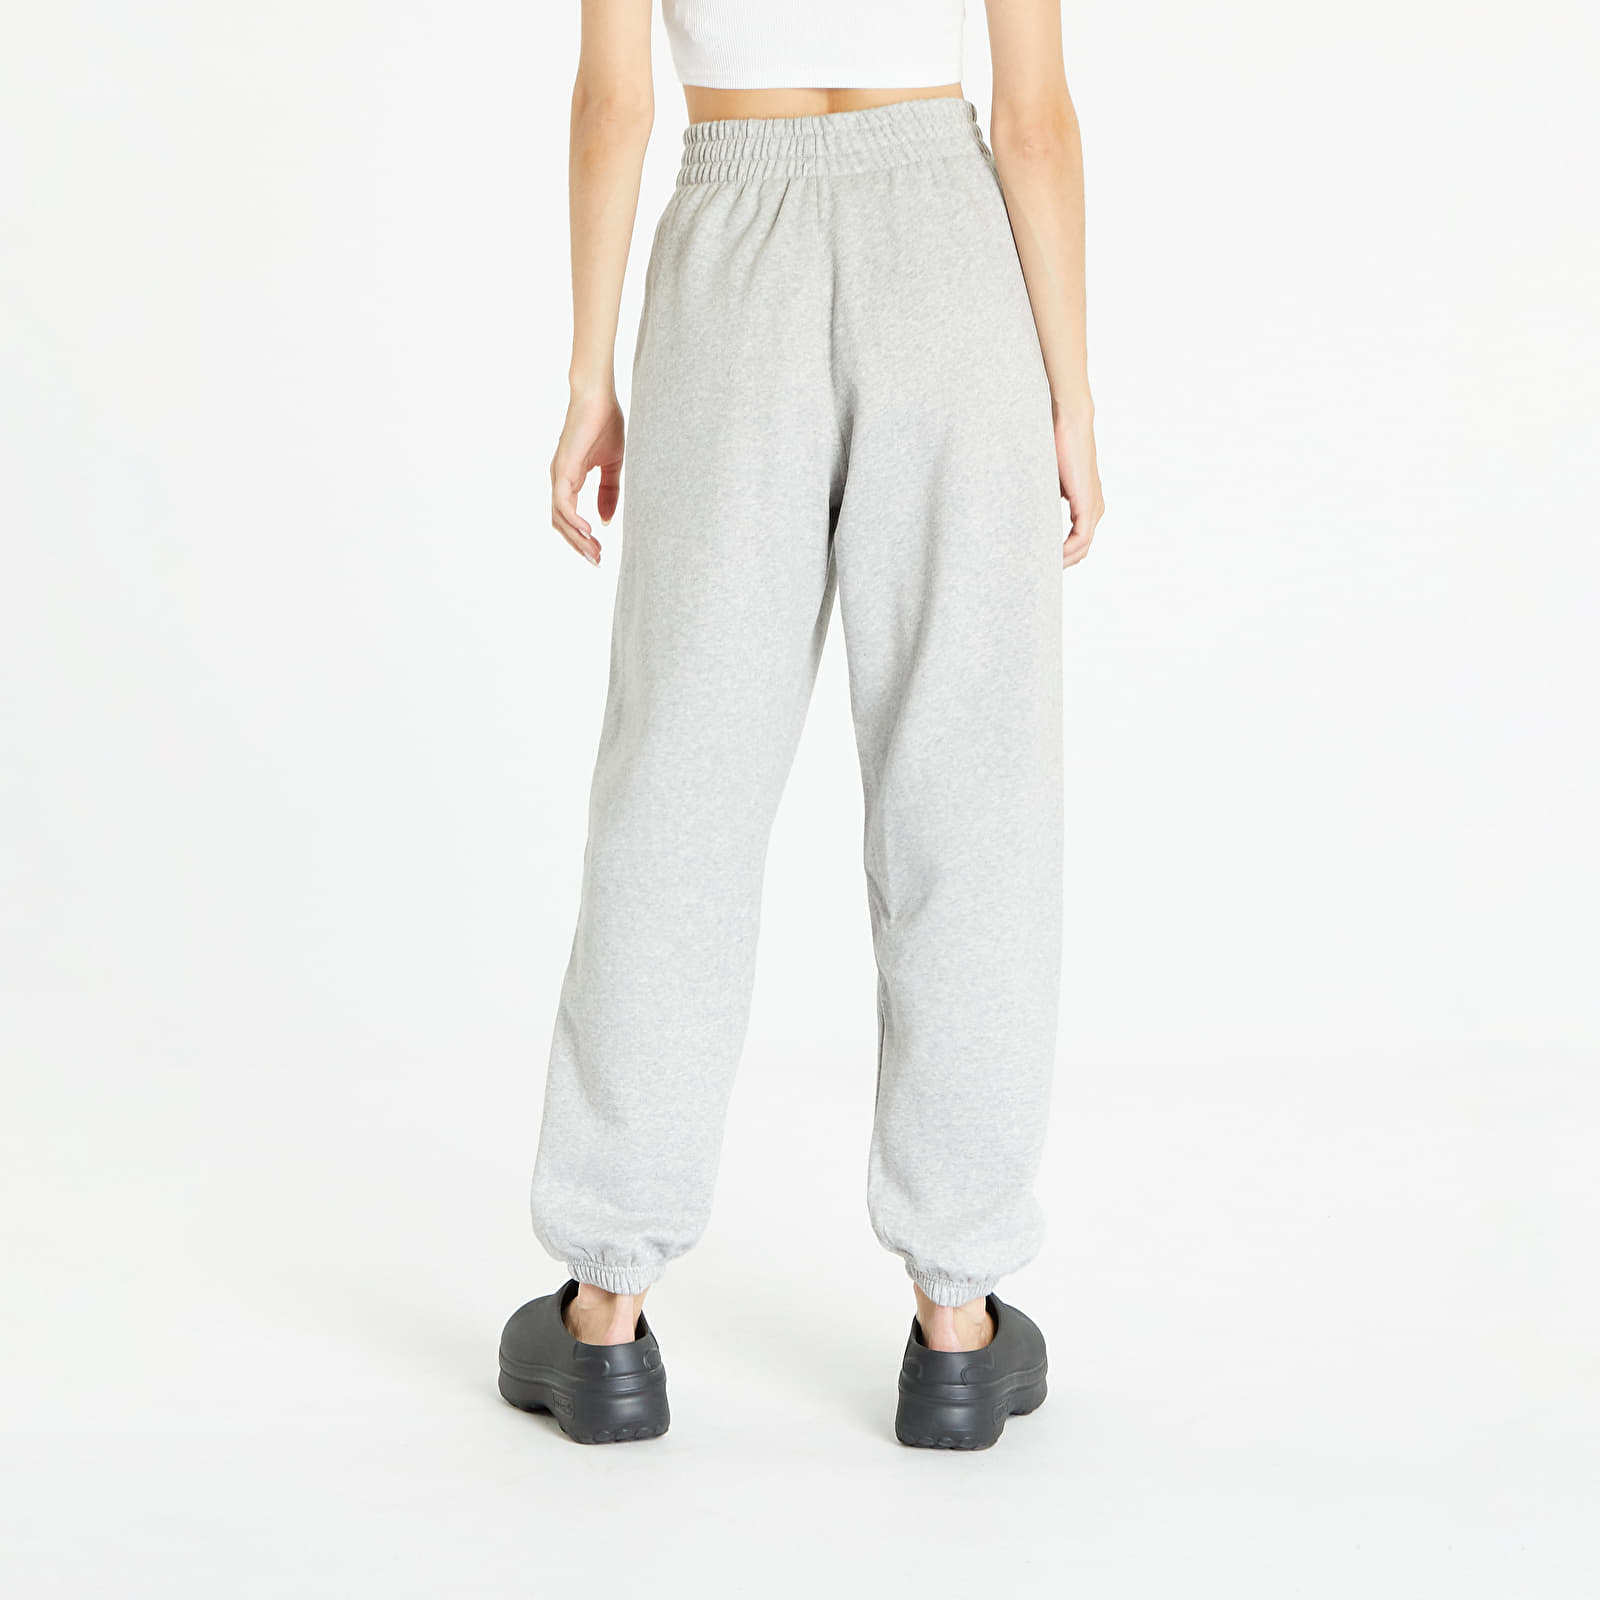 Heather Grey Joggers adidas Pants Jogger Fleece Queens | Originals Essentials Medium